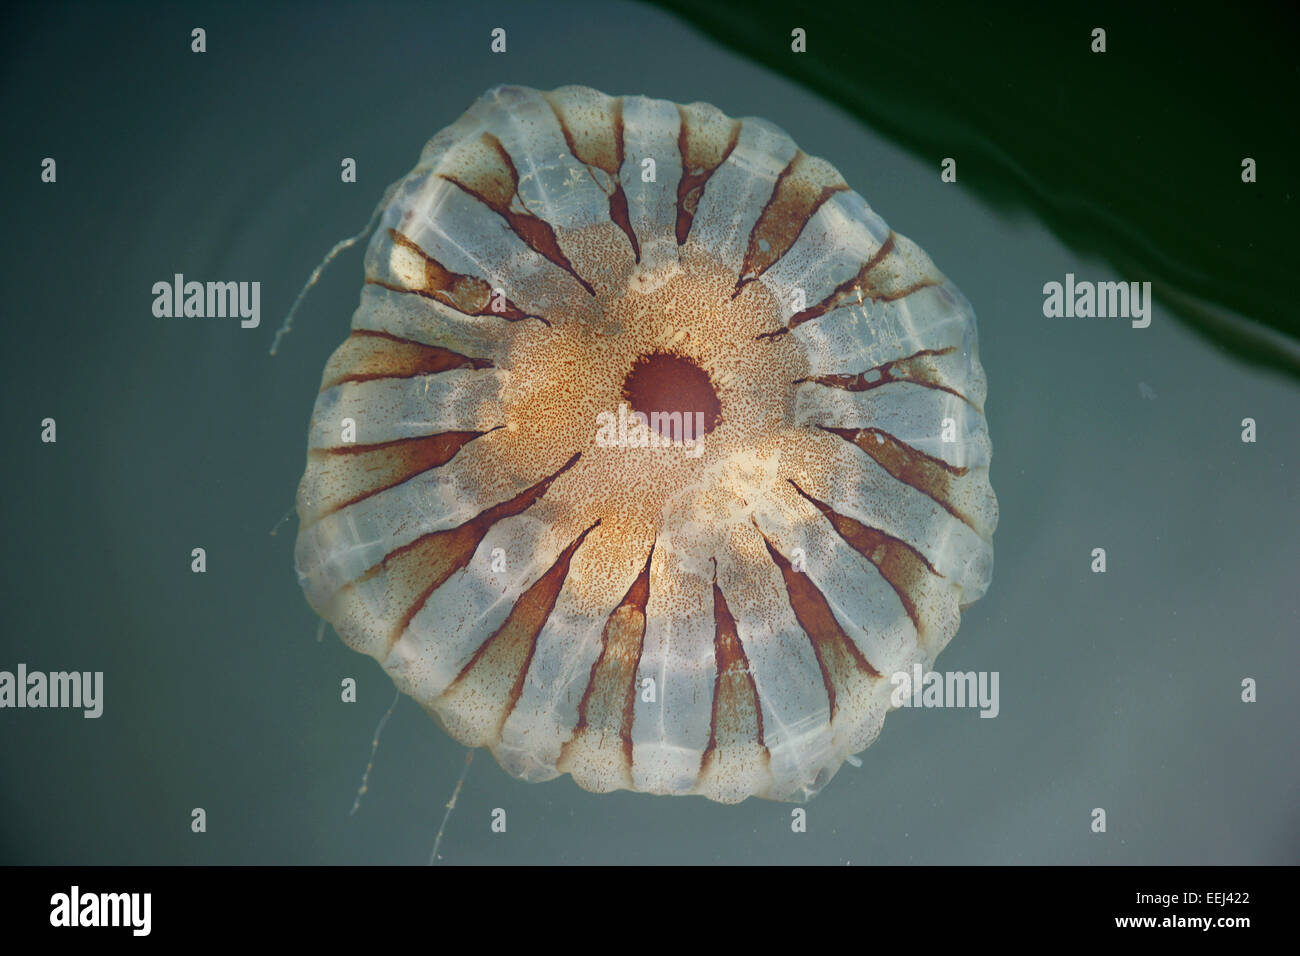 Jellyfish. Stock Photo